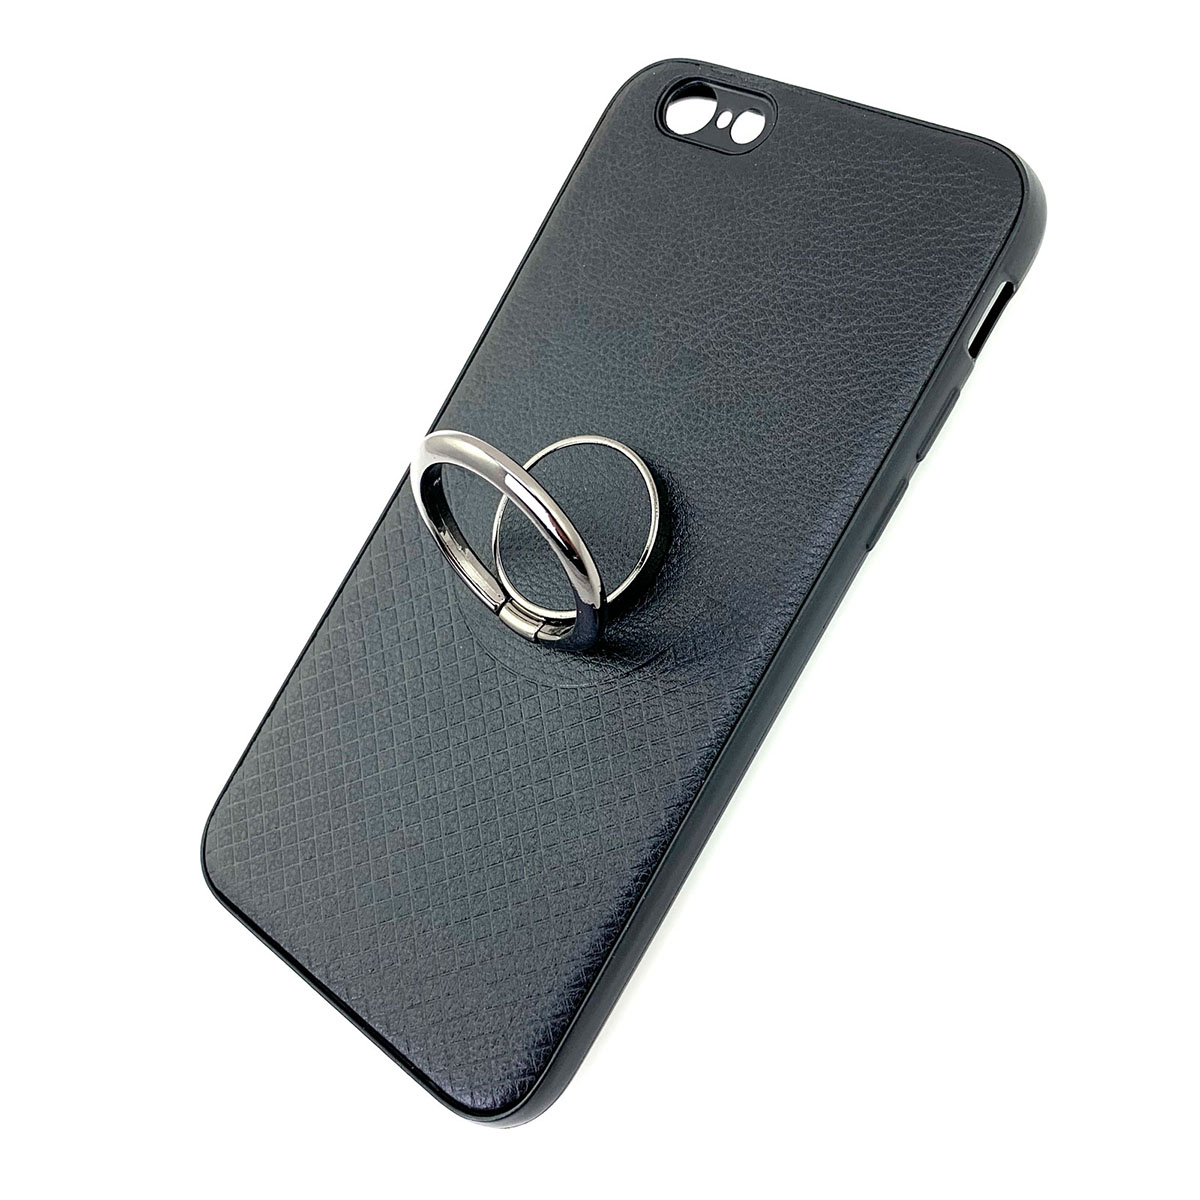 Чехол накладка для APPLE iPhone 6, 6S, силикон, под кожу, кольцо держатель, цвет черный.